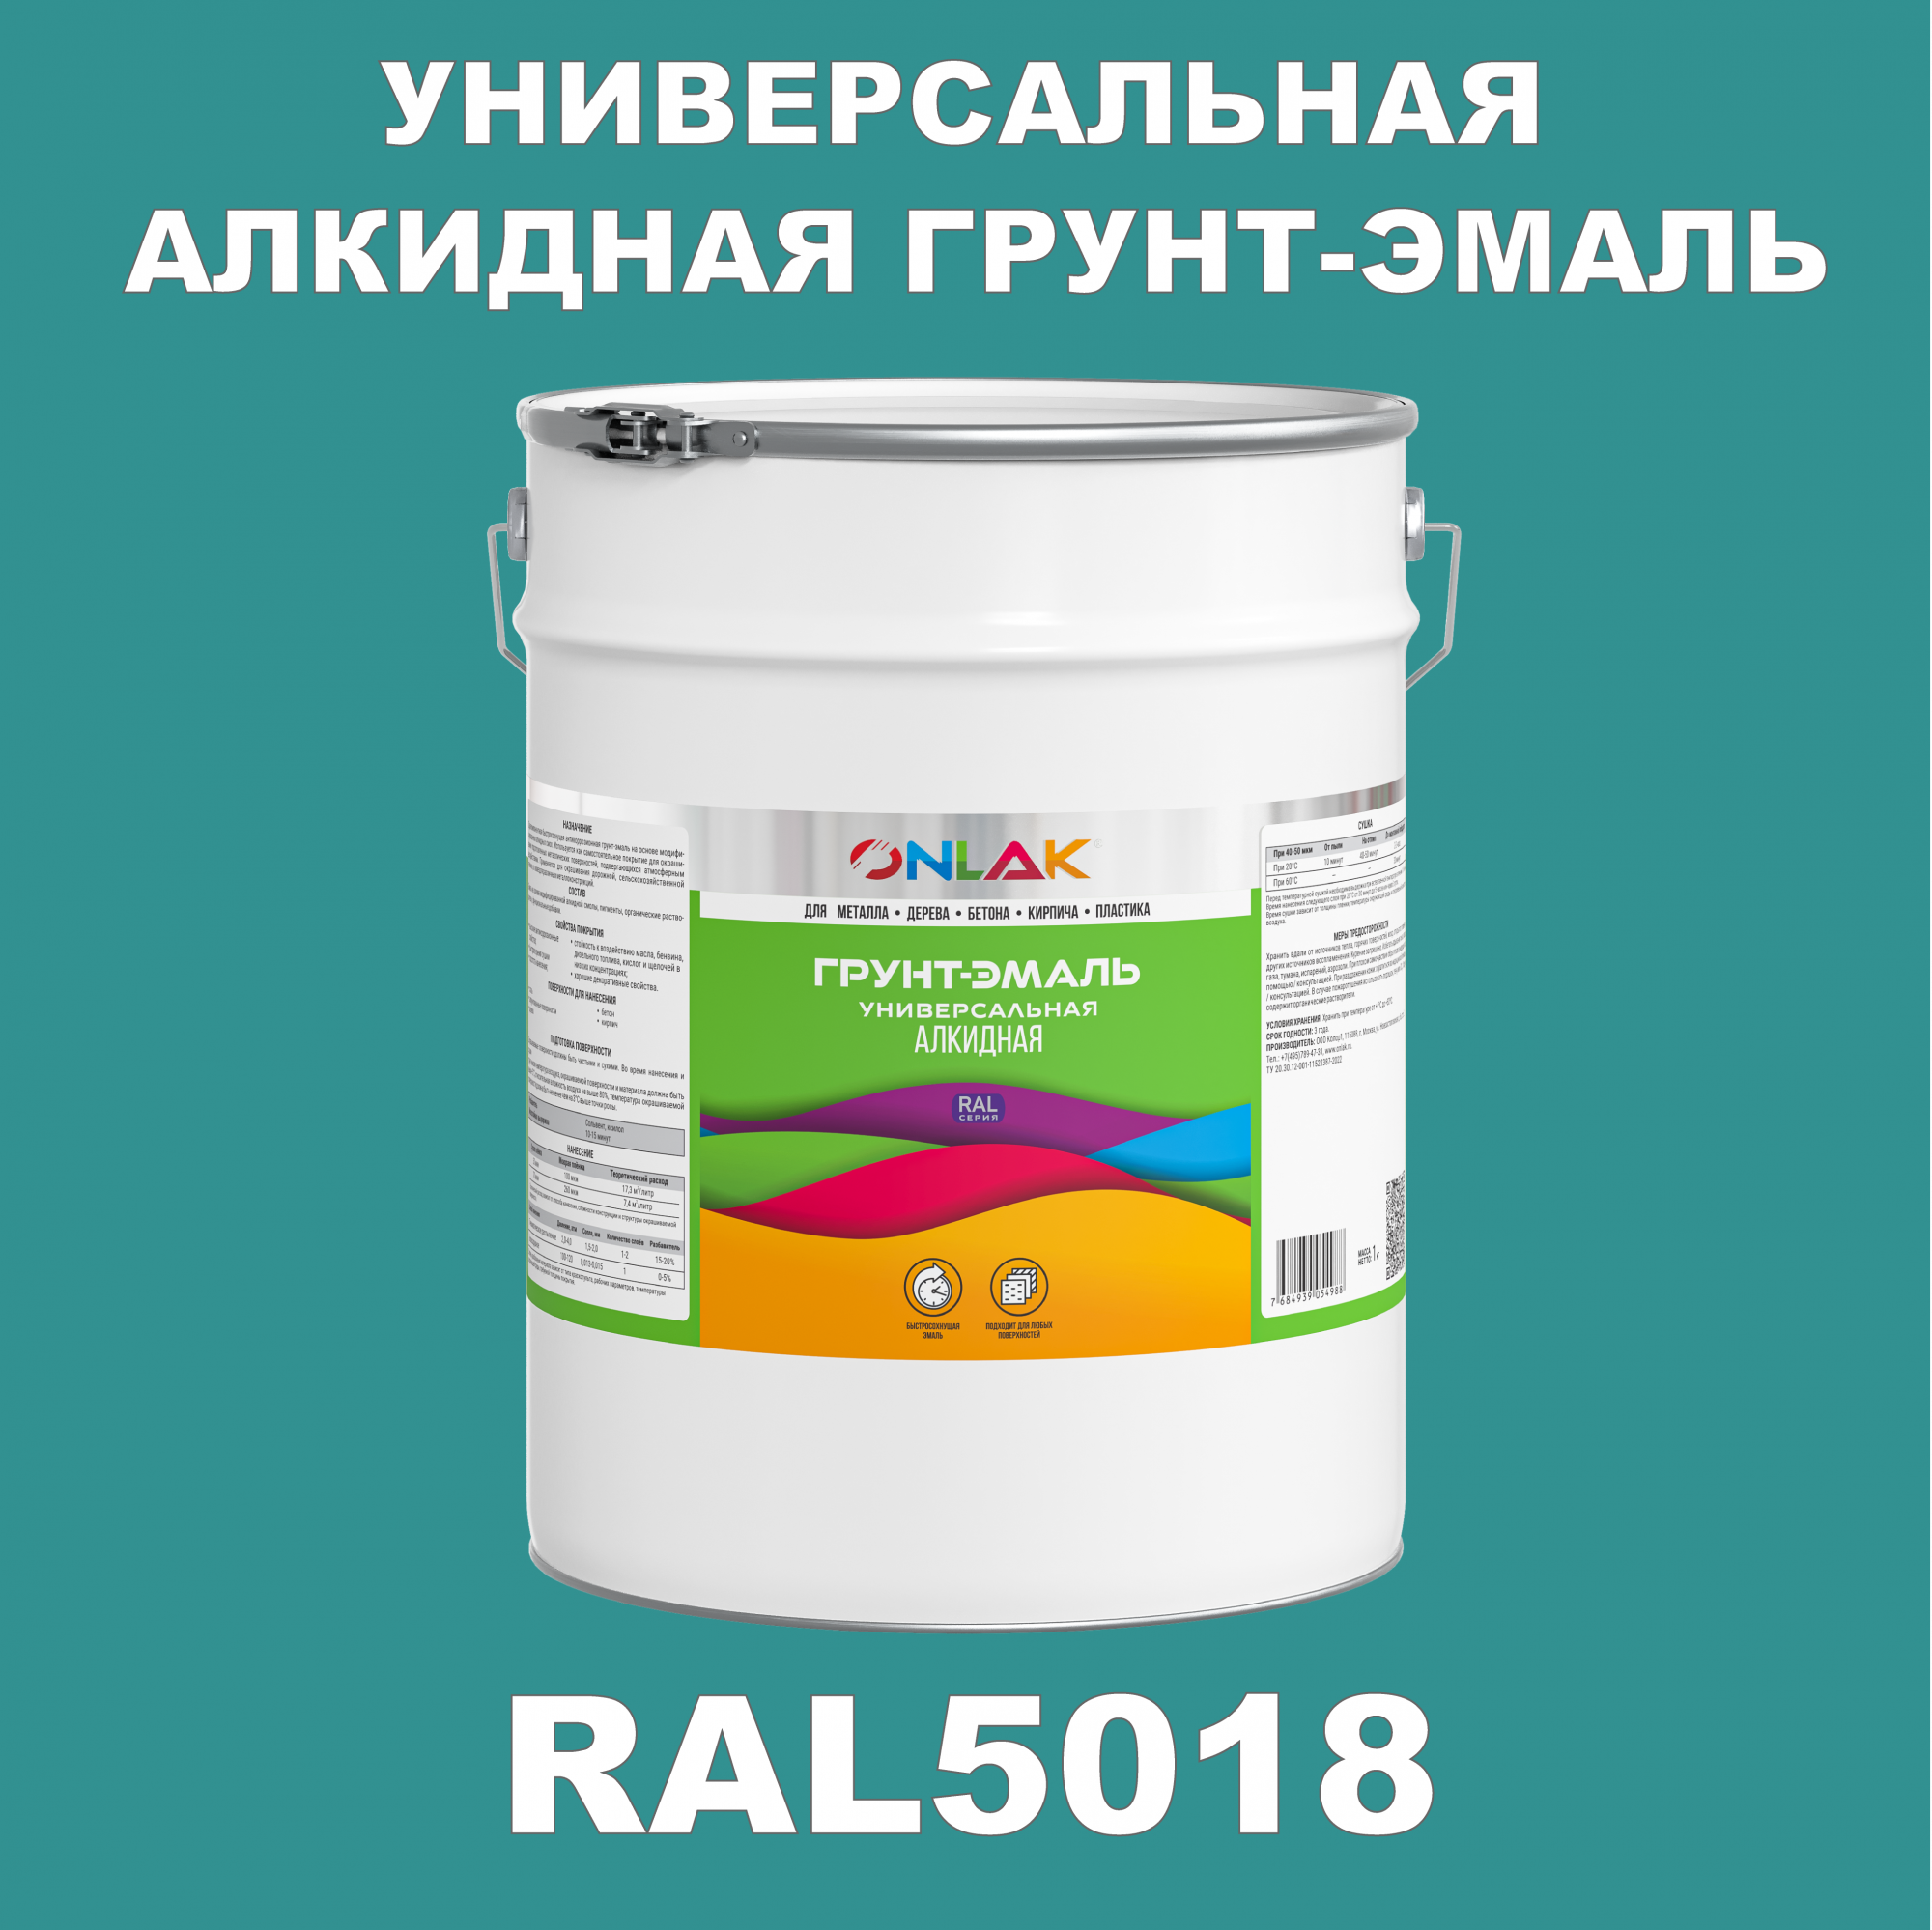 Грунт-эмаль ONLAK 1К RAL5018 антикоррозионная алкидная по металлу по ржавчине 20 кг грунт эмаль yollo по ржавчине алкидная белая 0 9 кг